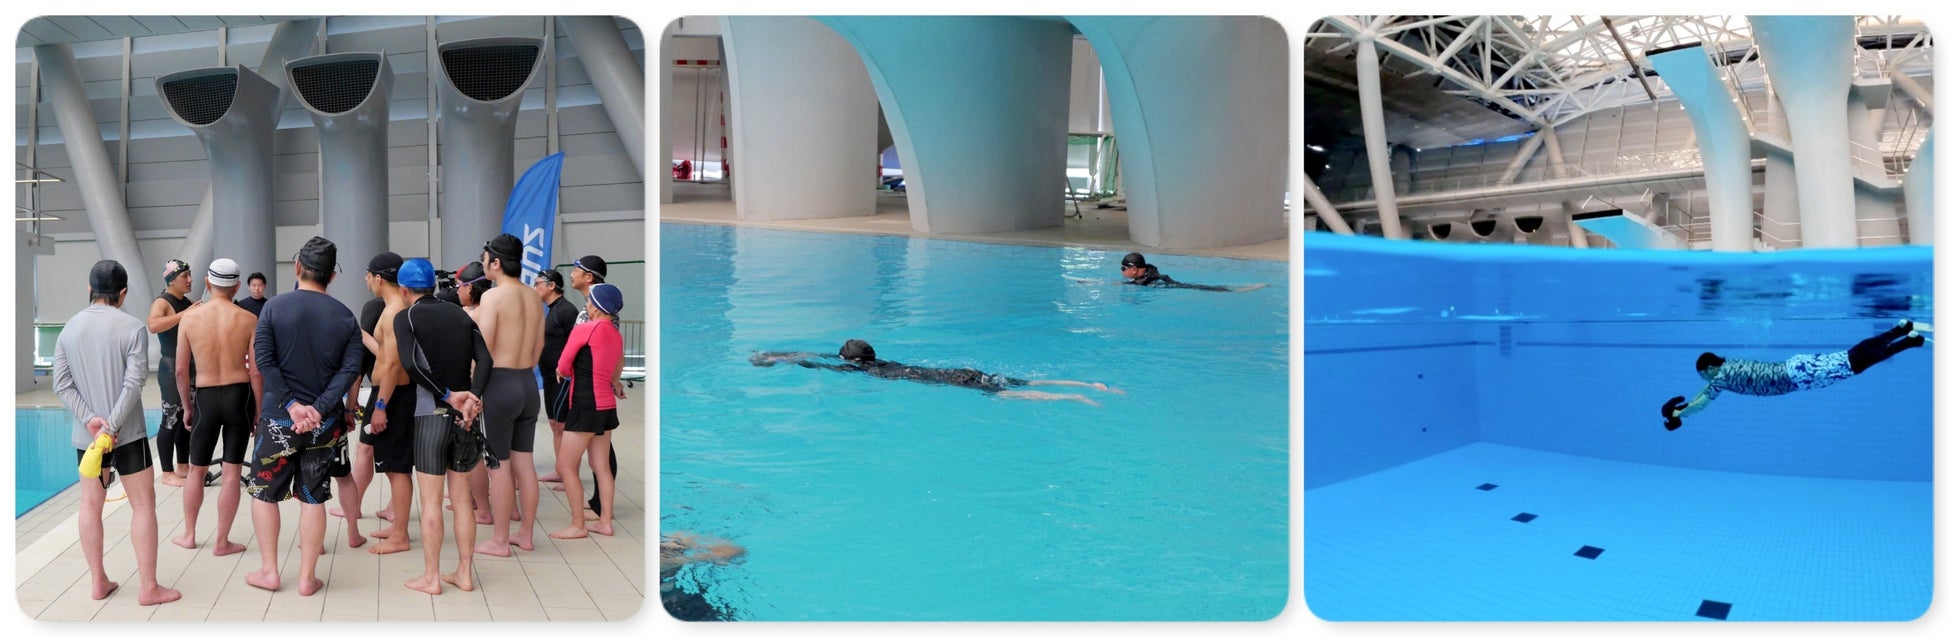 簡単操作で自由に泳げる水中スクーターで新しいアクアフィットネスを体感する無料体験会を7月20日（水）に東京都江東区のプールで初開催のサブ画像2_別会場で開催した過去の体験会